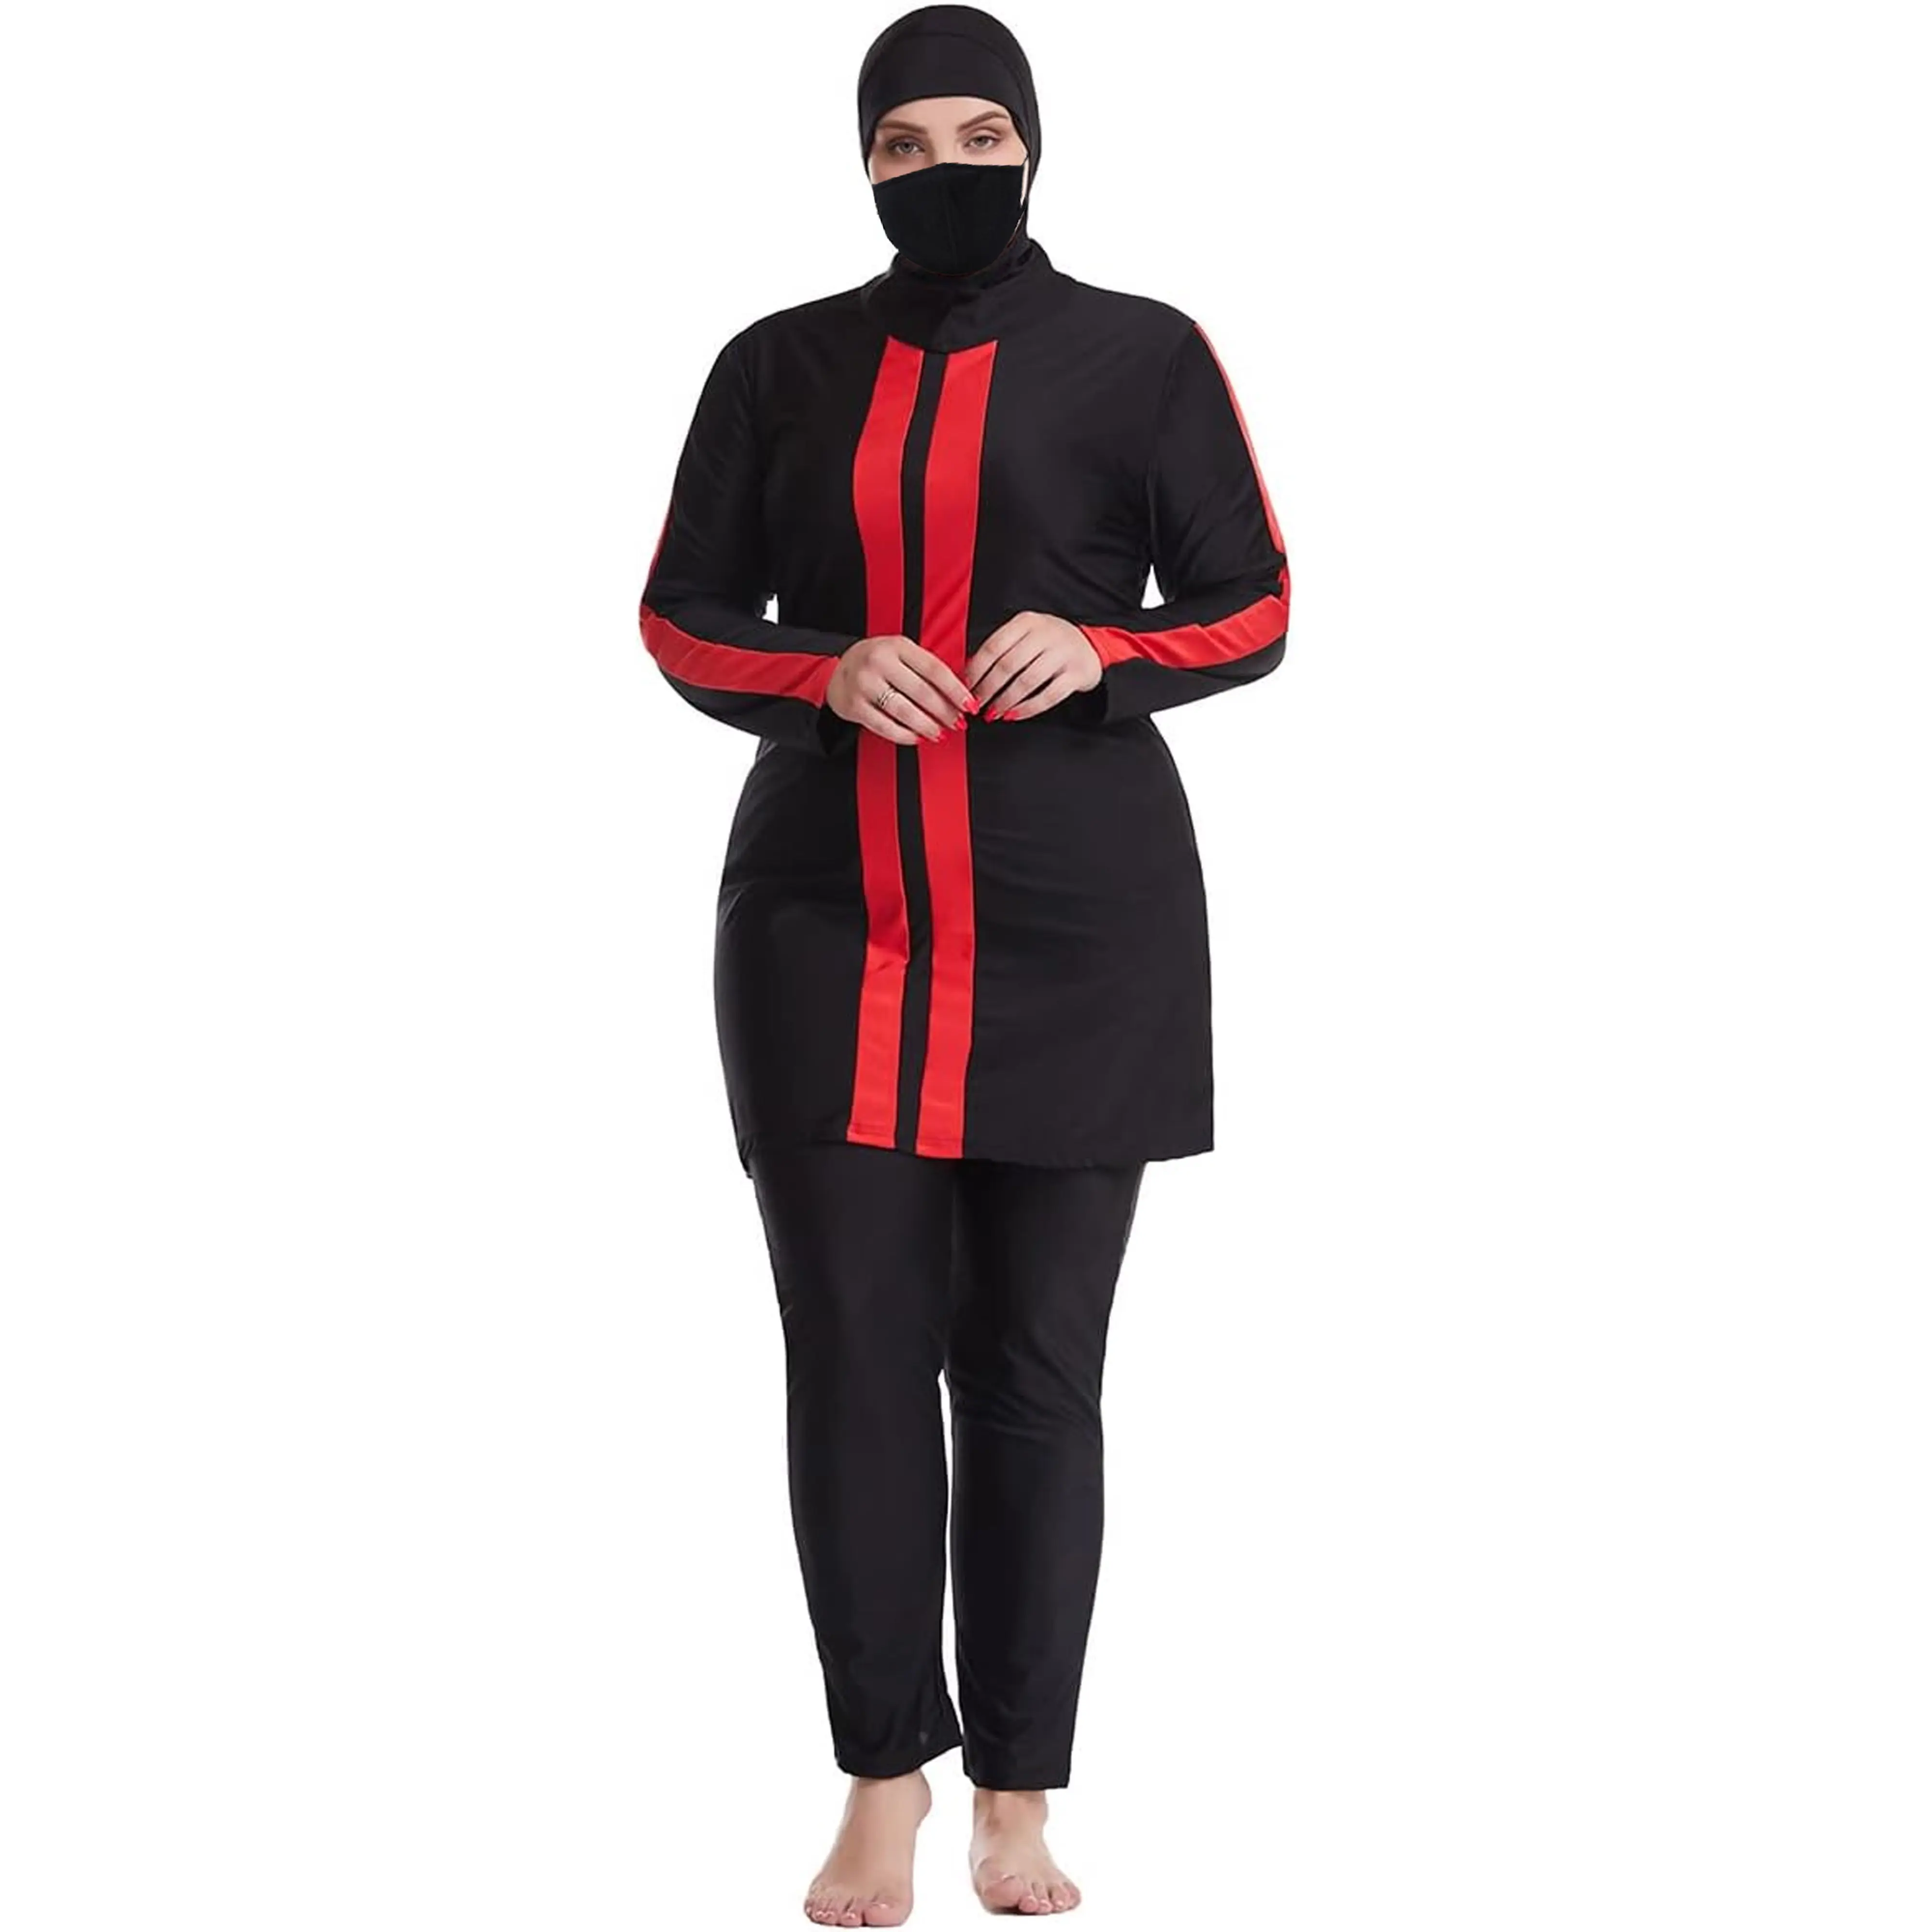 عالي الجودة كامل الجسم ملابس السباحة النسائية تغطية حتى مقاس كبير مجموعة ملابس السباحة العربية المسلمة أزياء المرأة ملابس السباحة النسائية فستان للفتيات